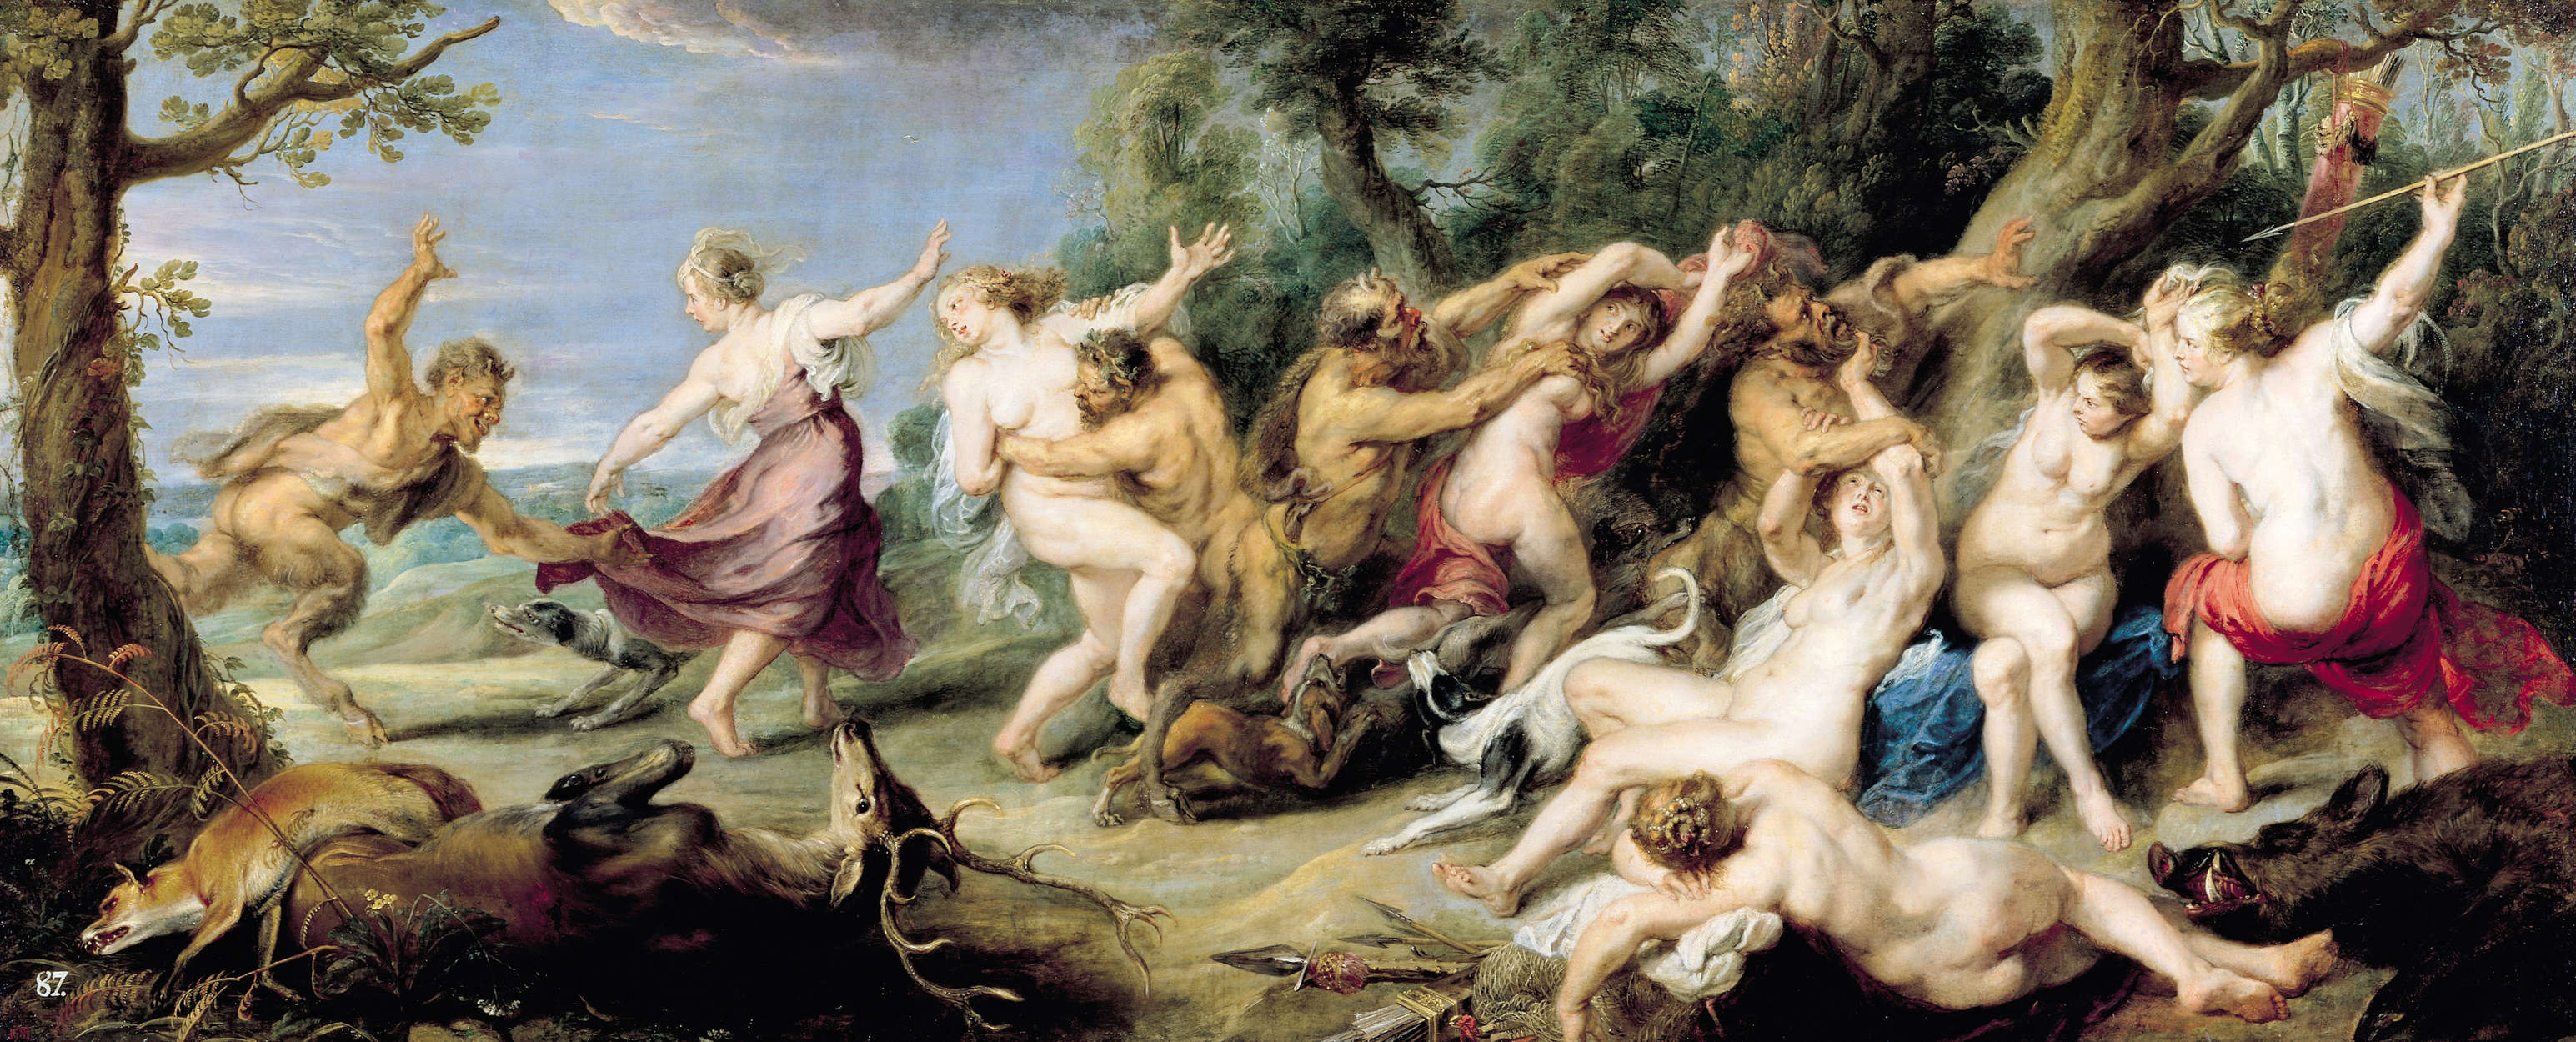             Fototapete "Diana und ihre Nymphen auf der Jagd" von Peter Paul Rubens
        